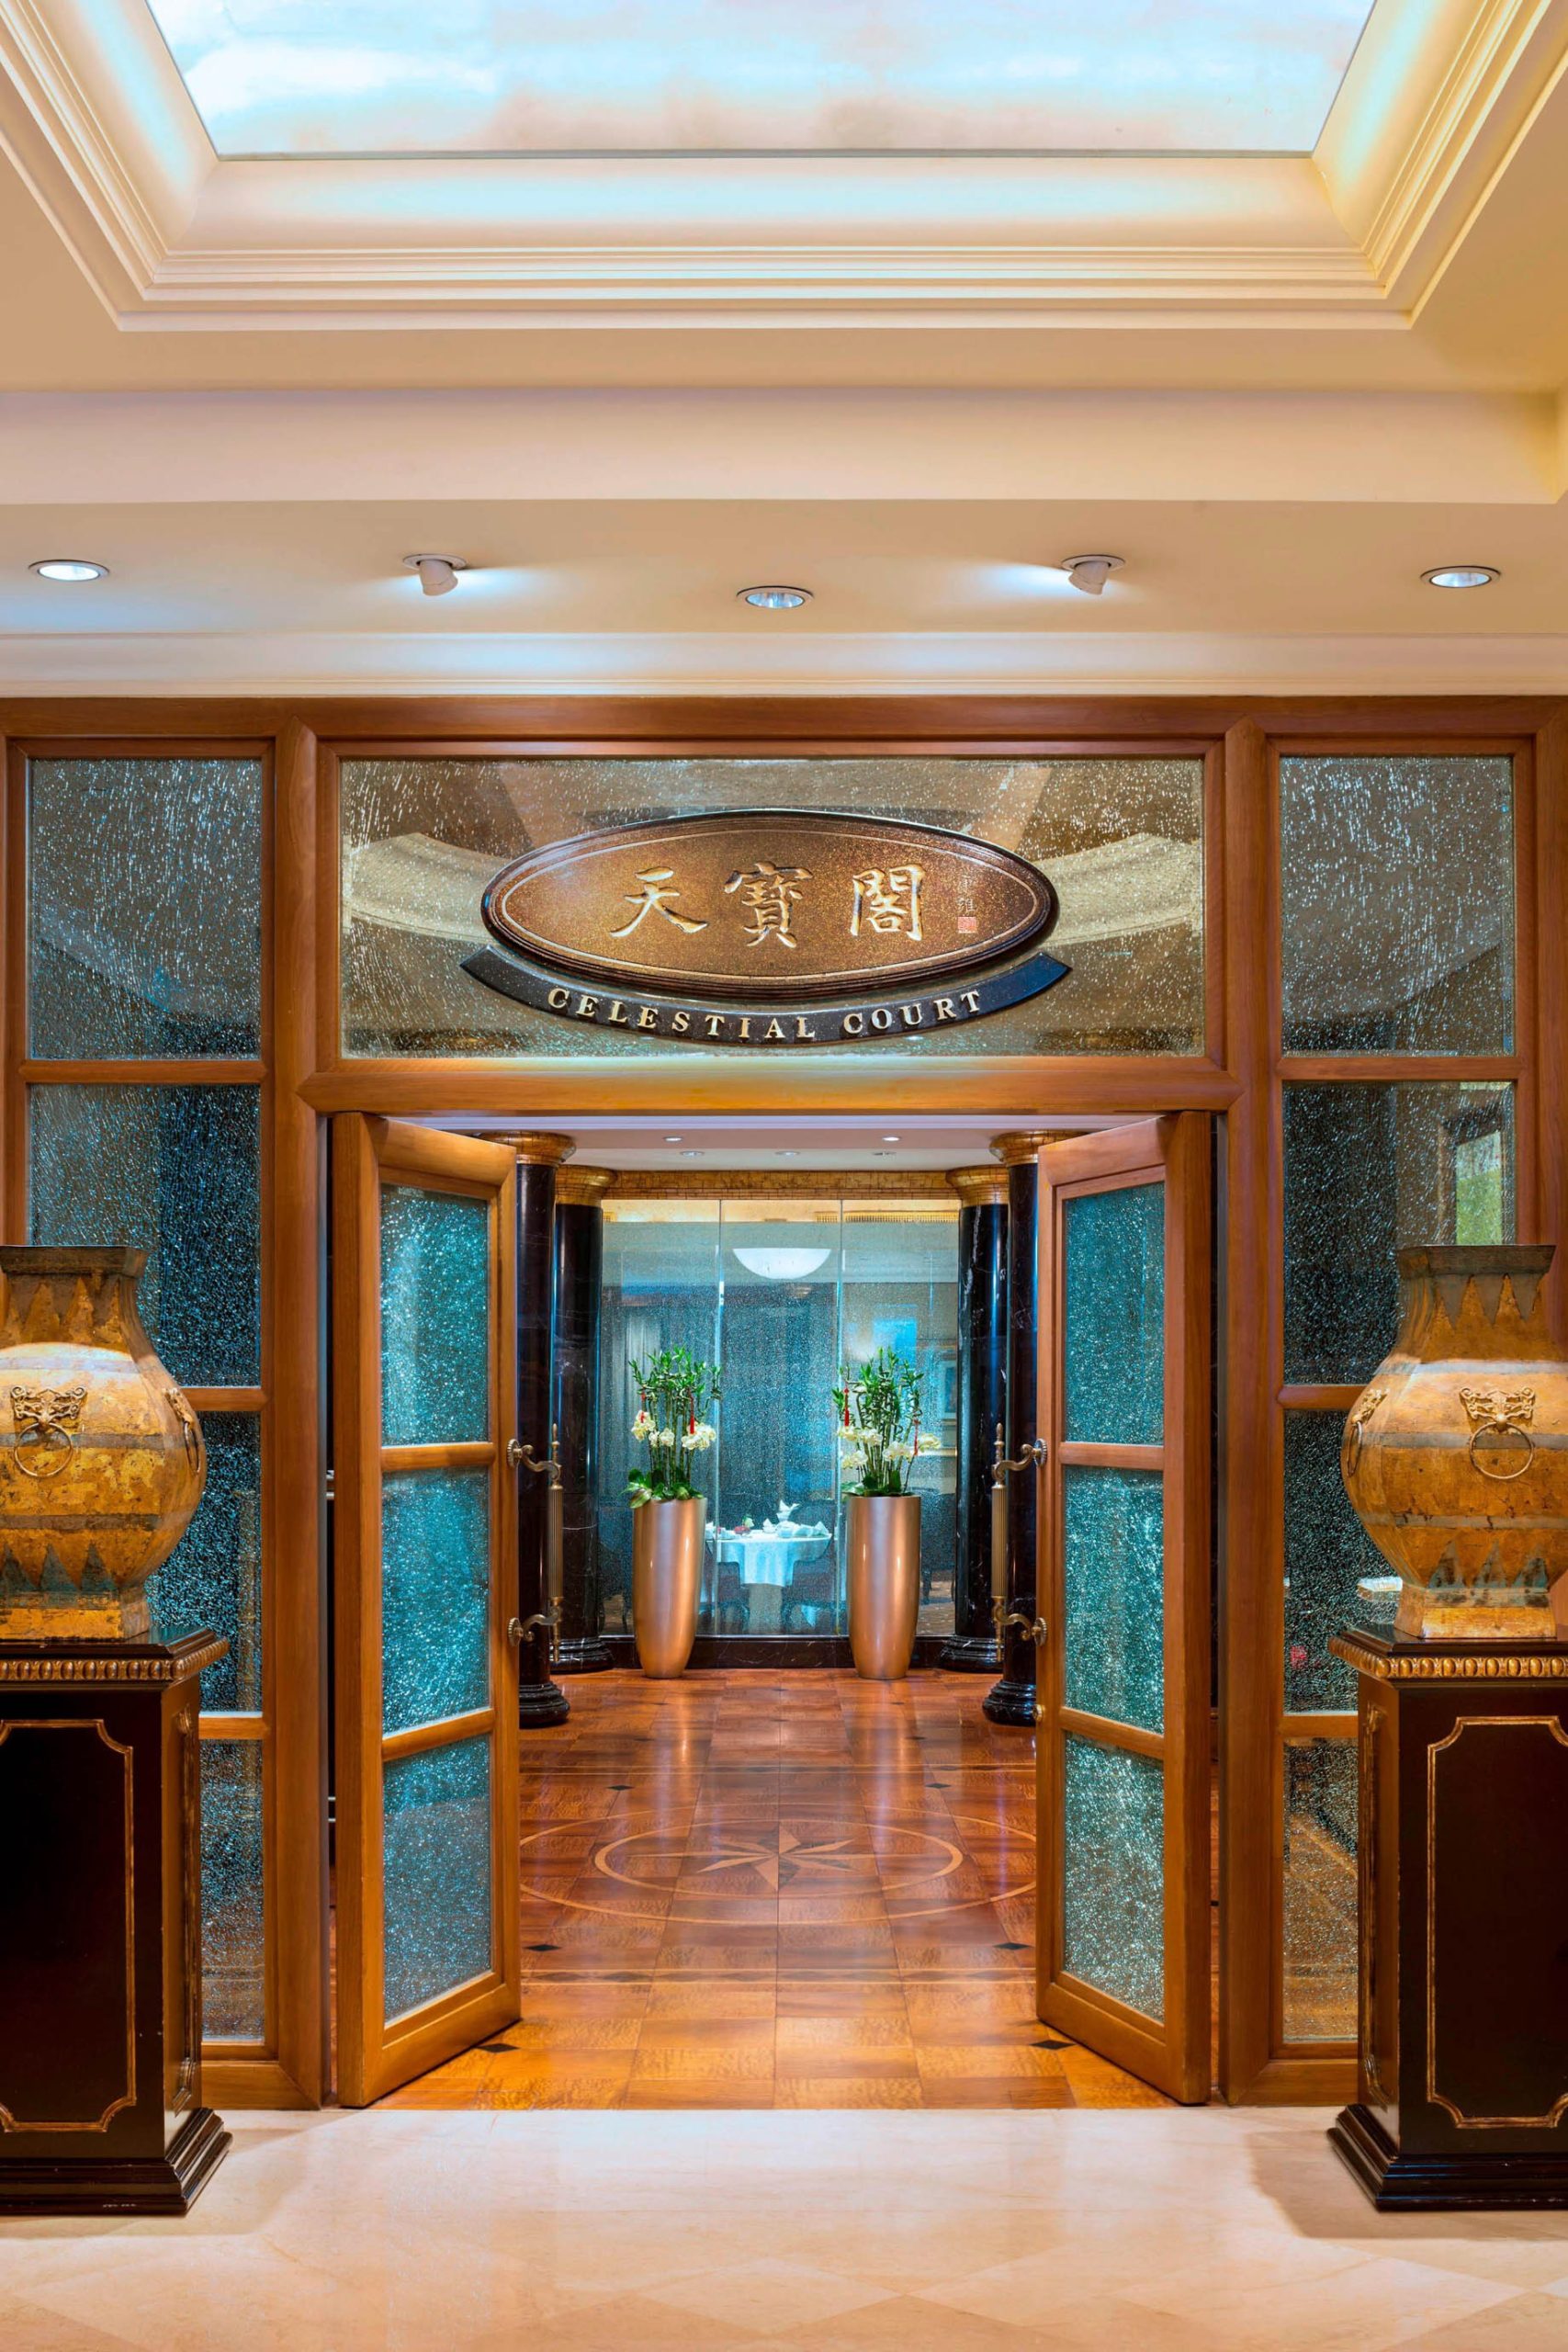 The St. Regis Beijing Hotel – Beijing, China – Celestial Court Entrance